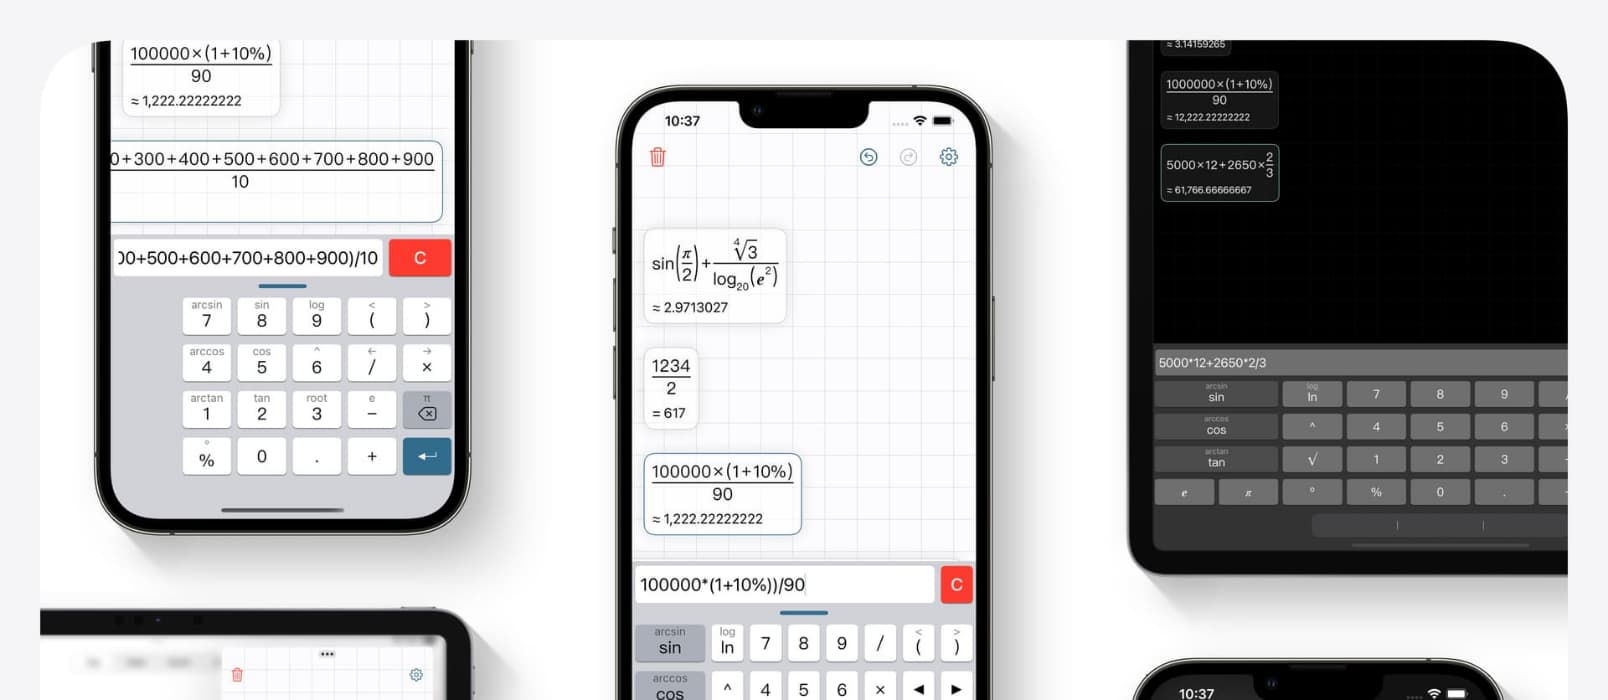 Inst 计算器 - 按书写习惯显示计算过程与结果的科学计算器应用[iPhone]
